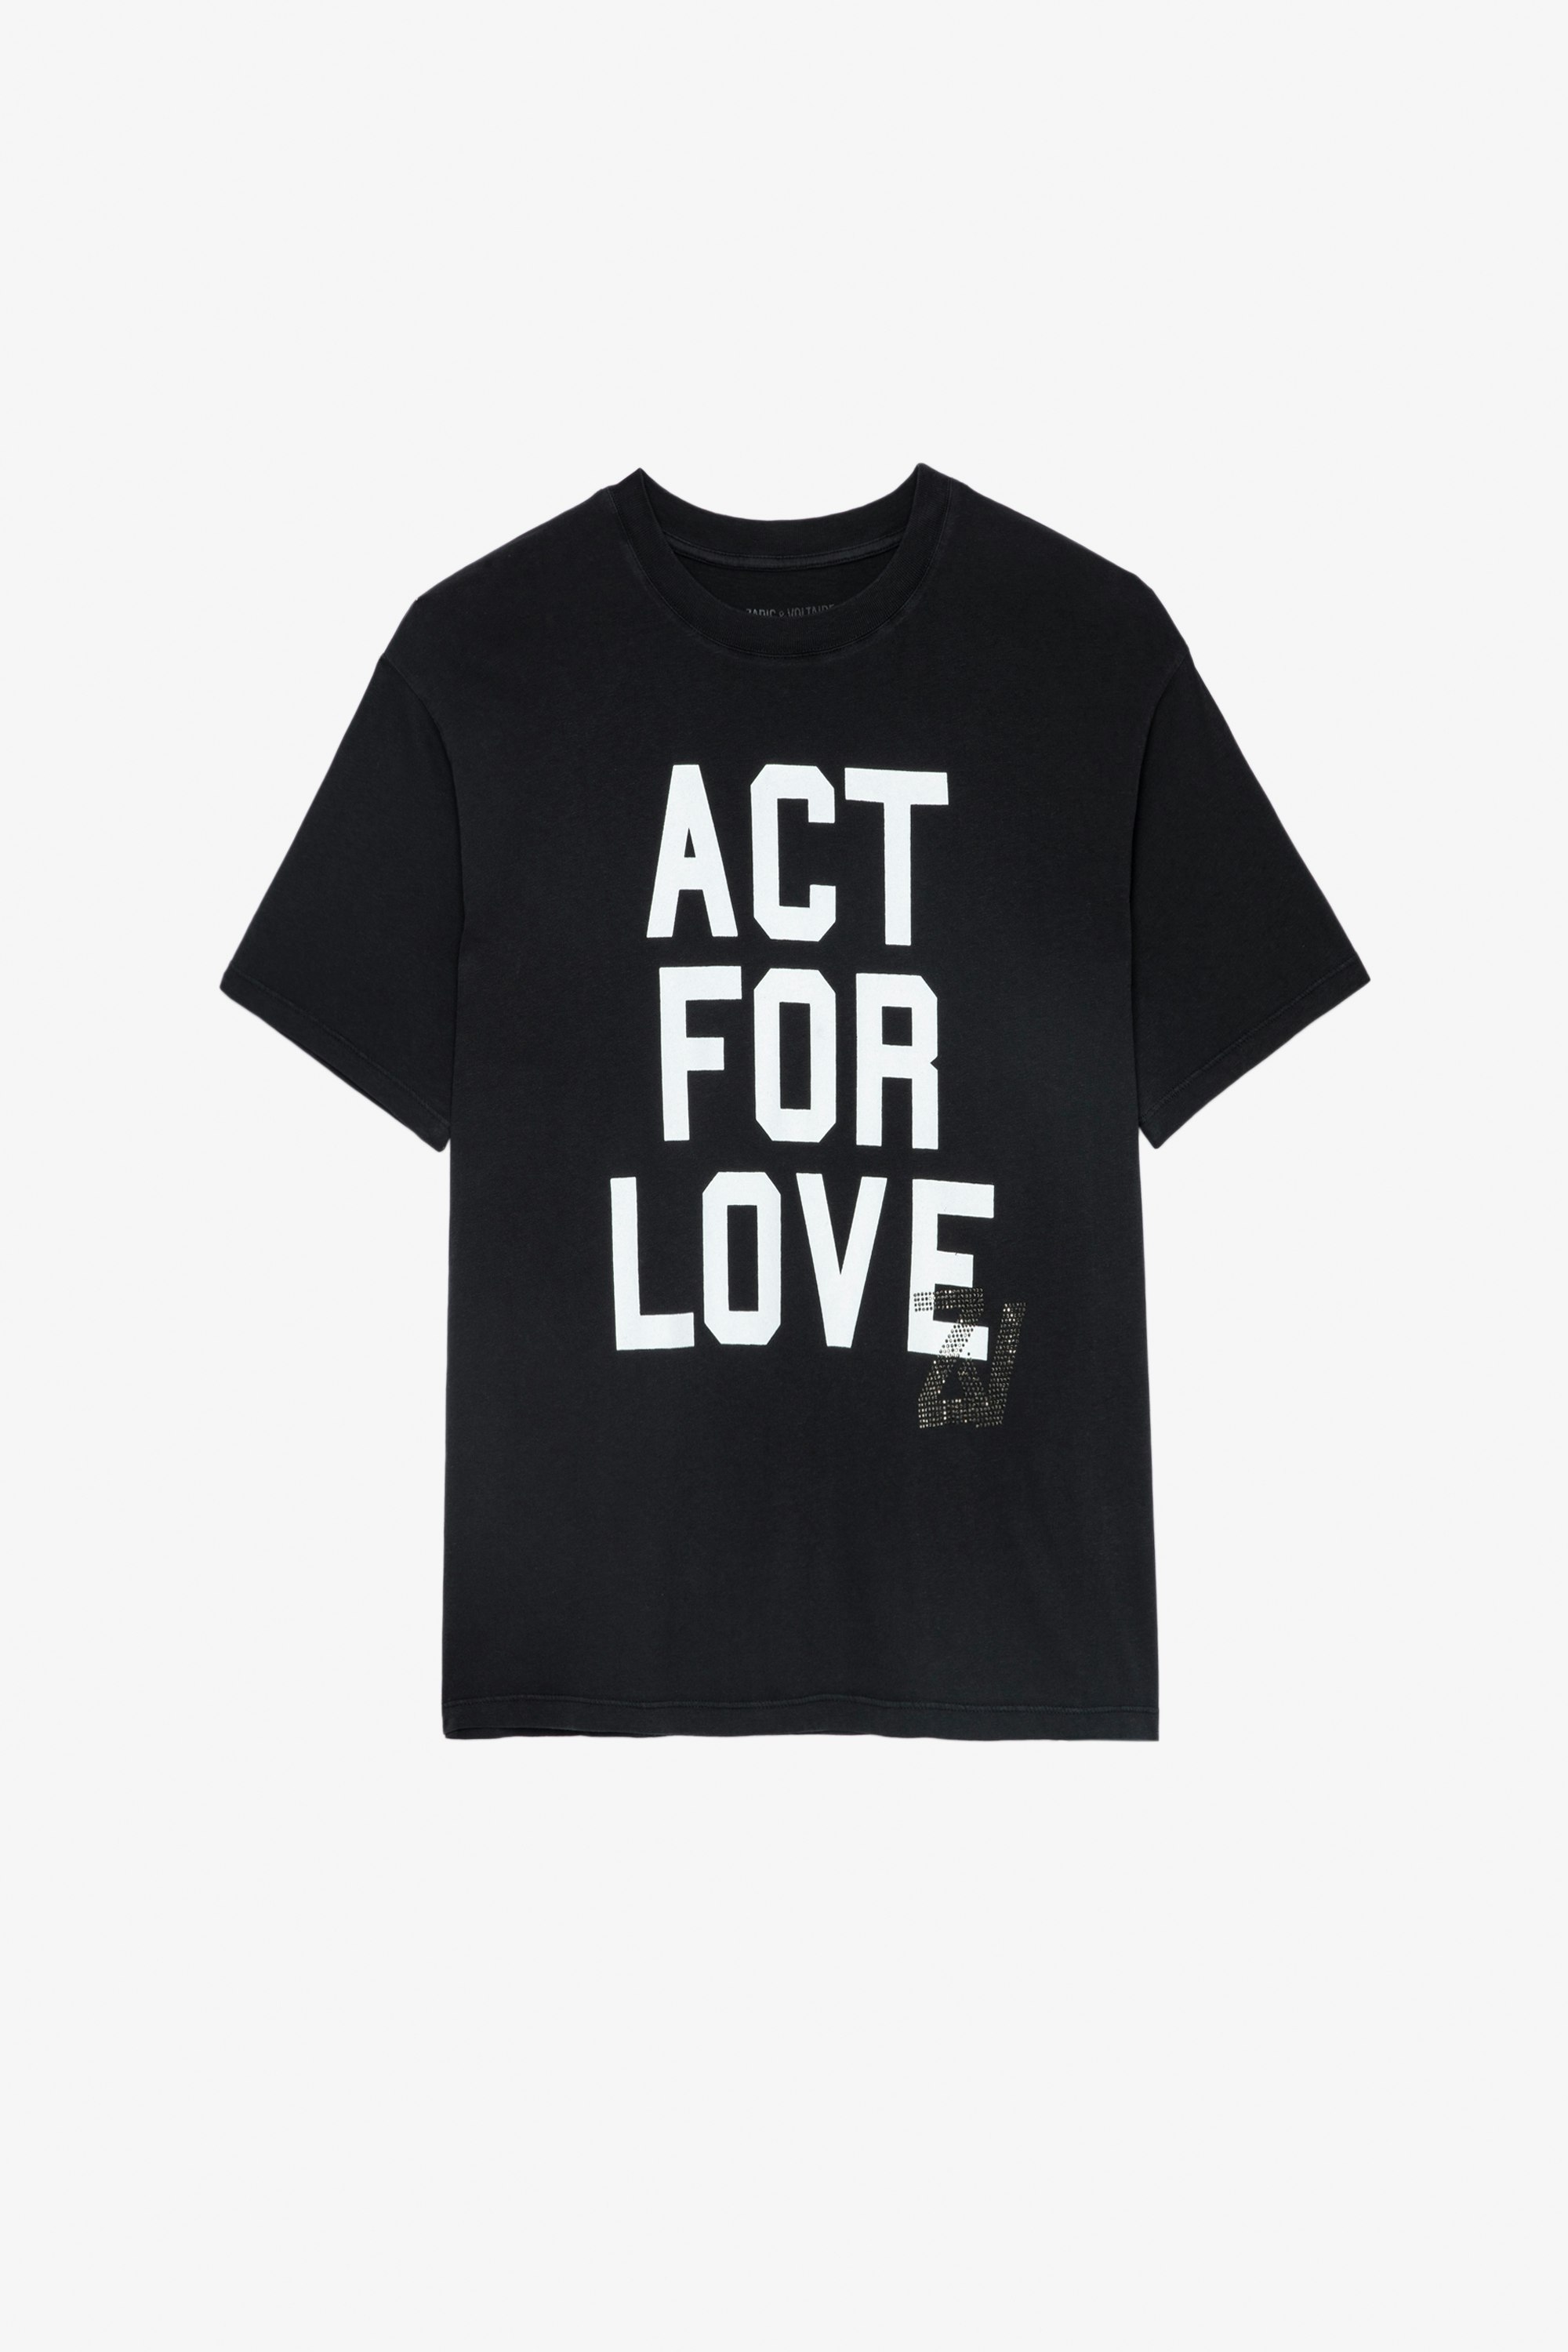 Camiseta Brooxs Camiseta negra de algodón de manga corta para mujer con cuello redondo y mensaje «Act for Love»